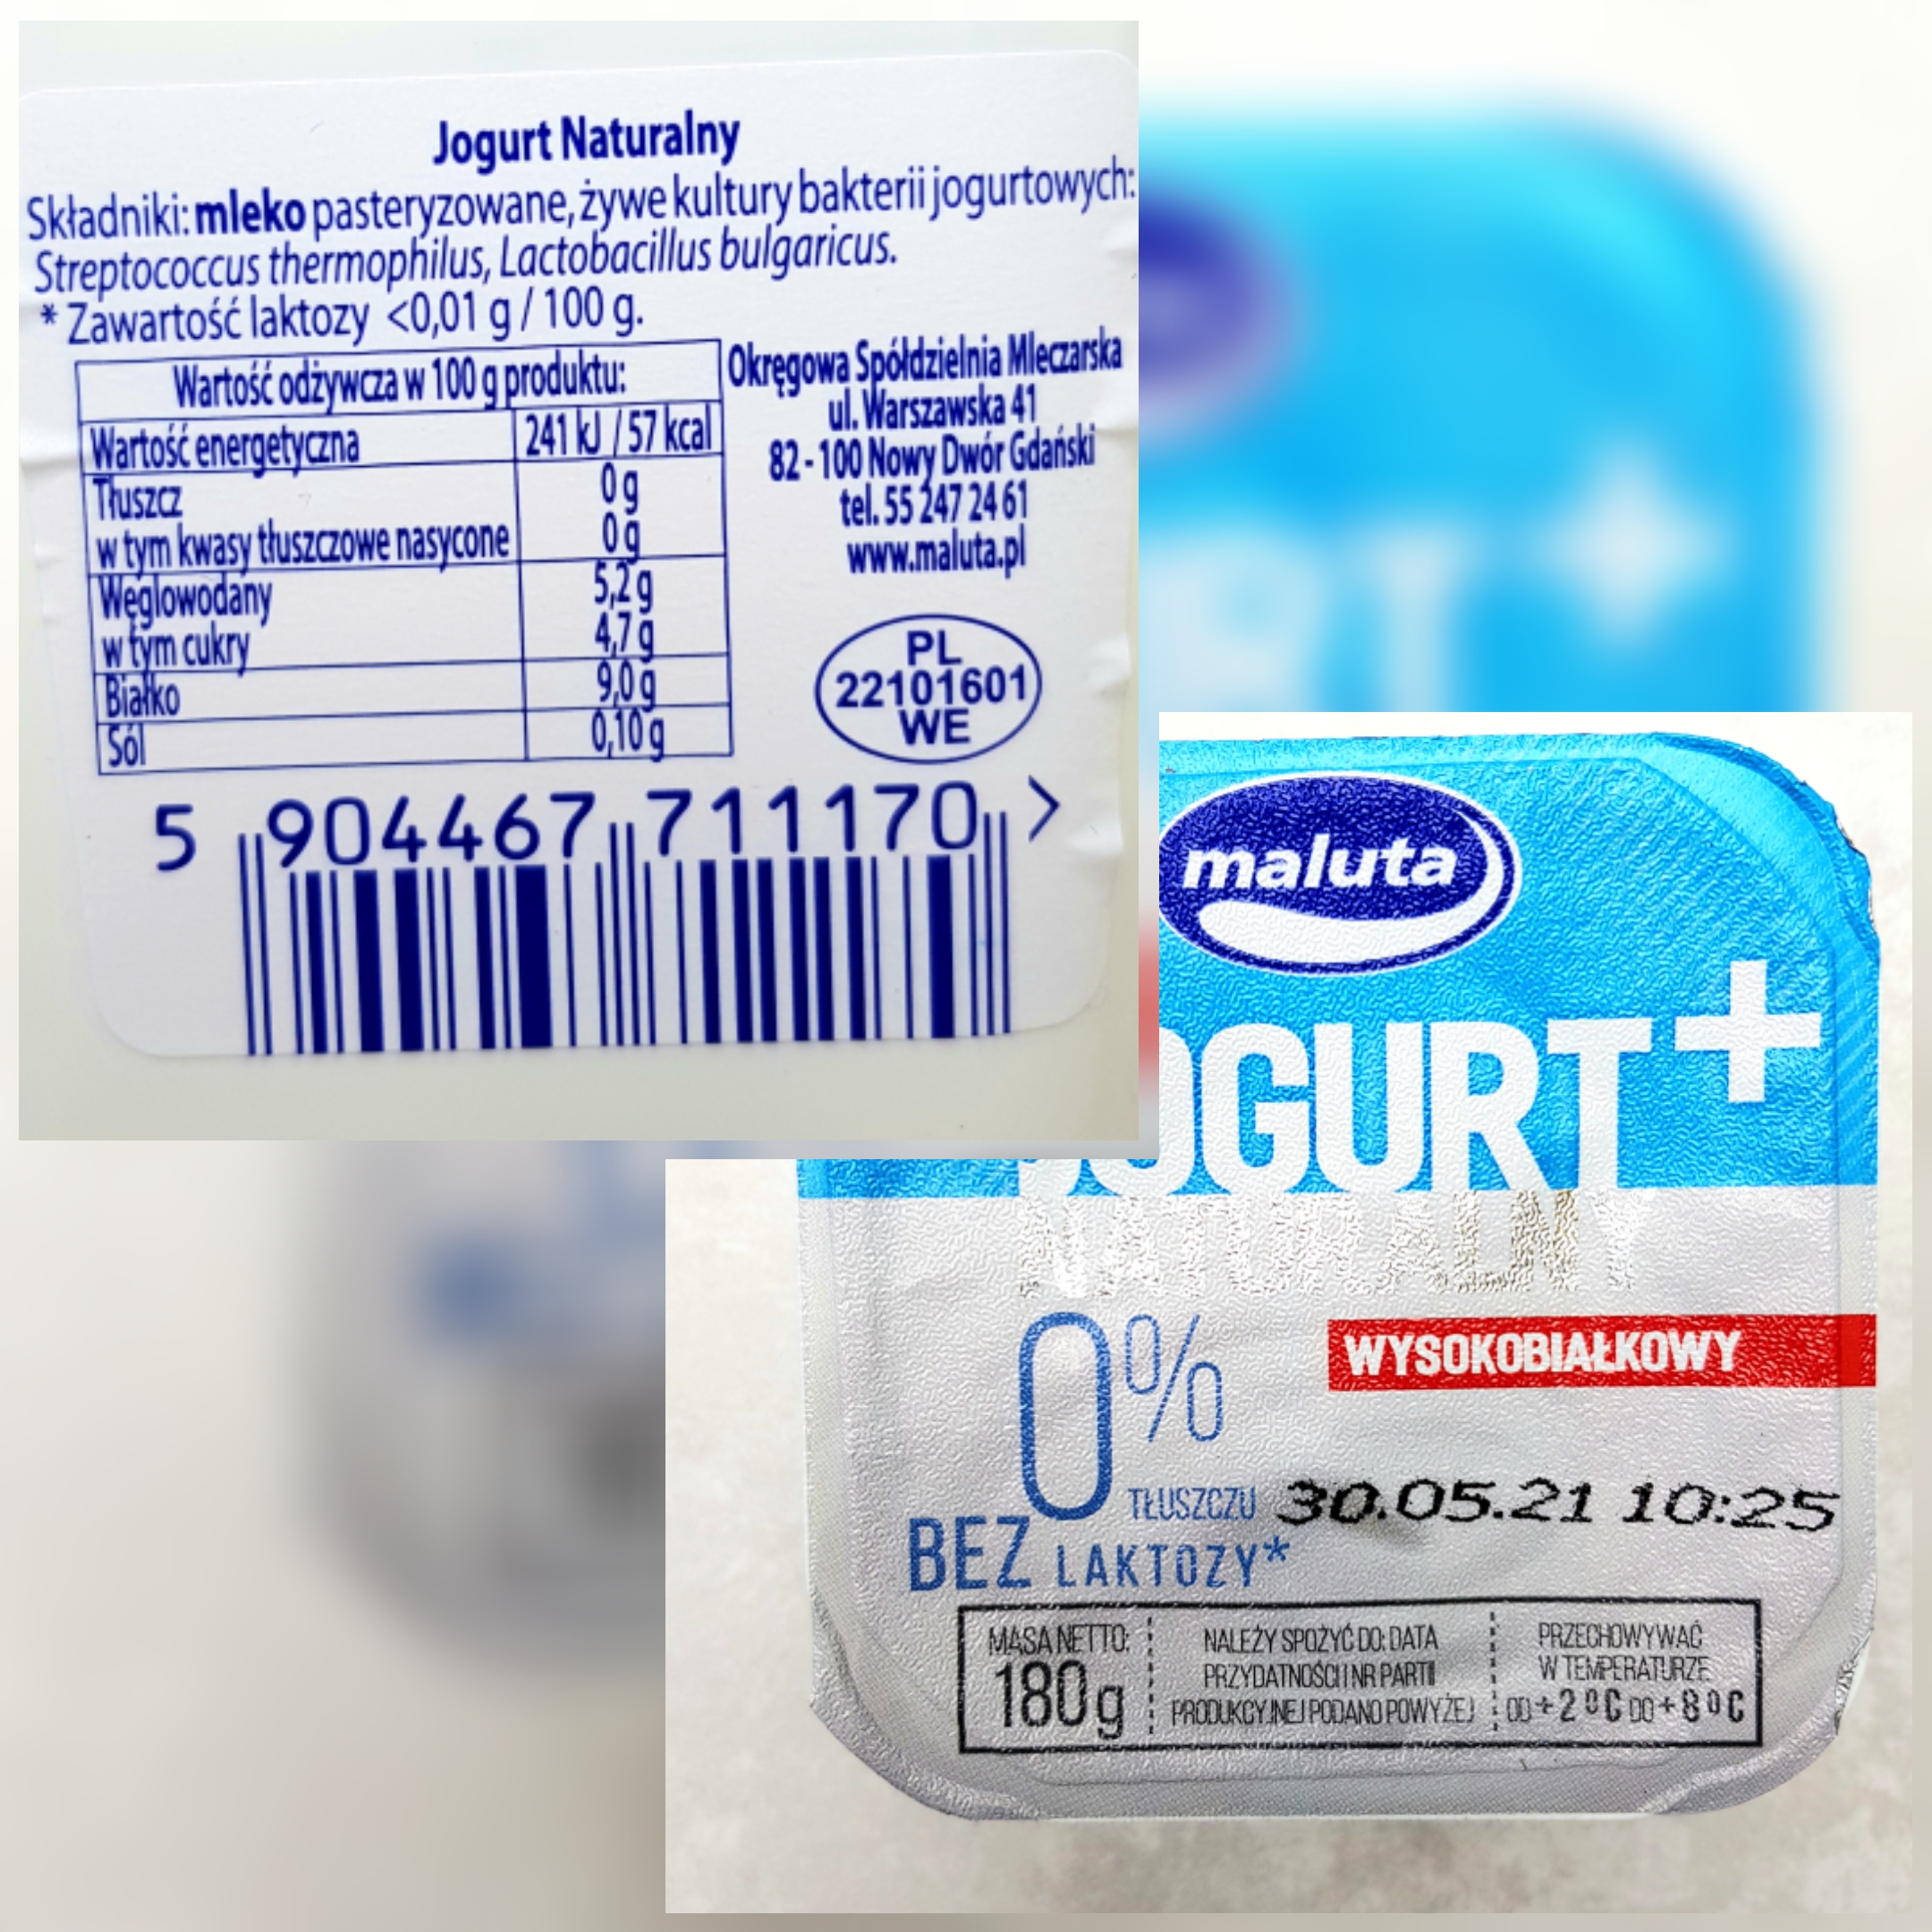 Jogurt+ Maluta 0% bez laktozy - wartości odżywcze i skład.